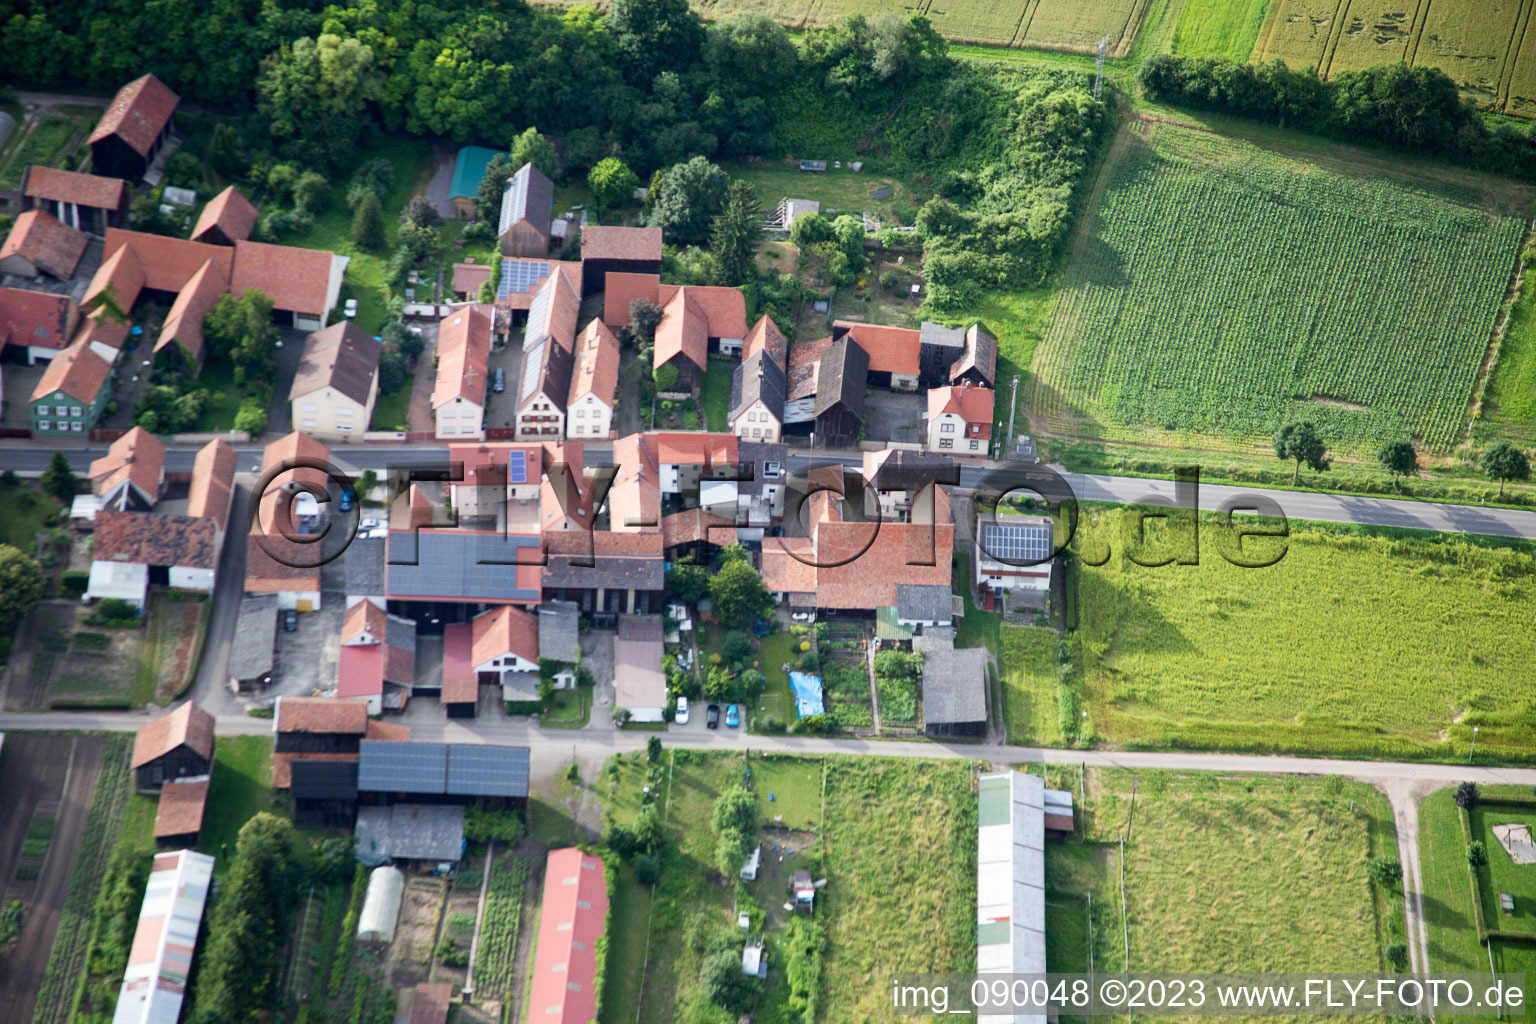 Aerial view of Herxheimweyher in the state Rhineland-Palatinate, Germany